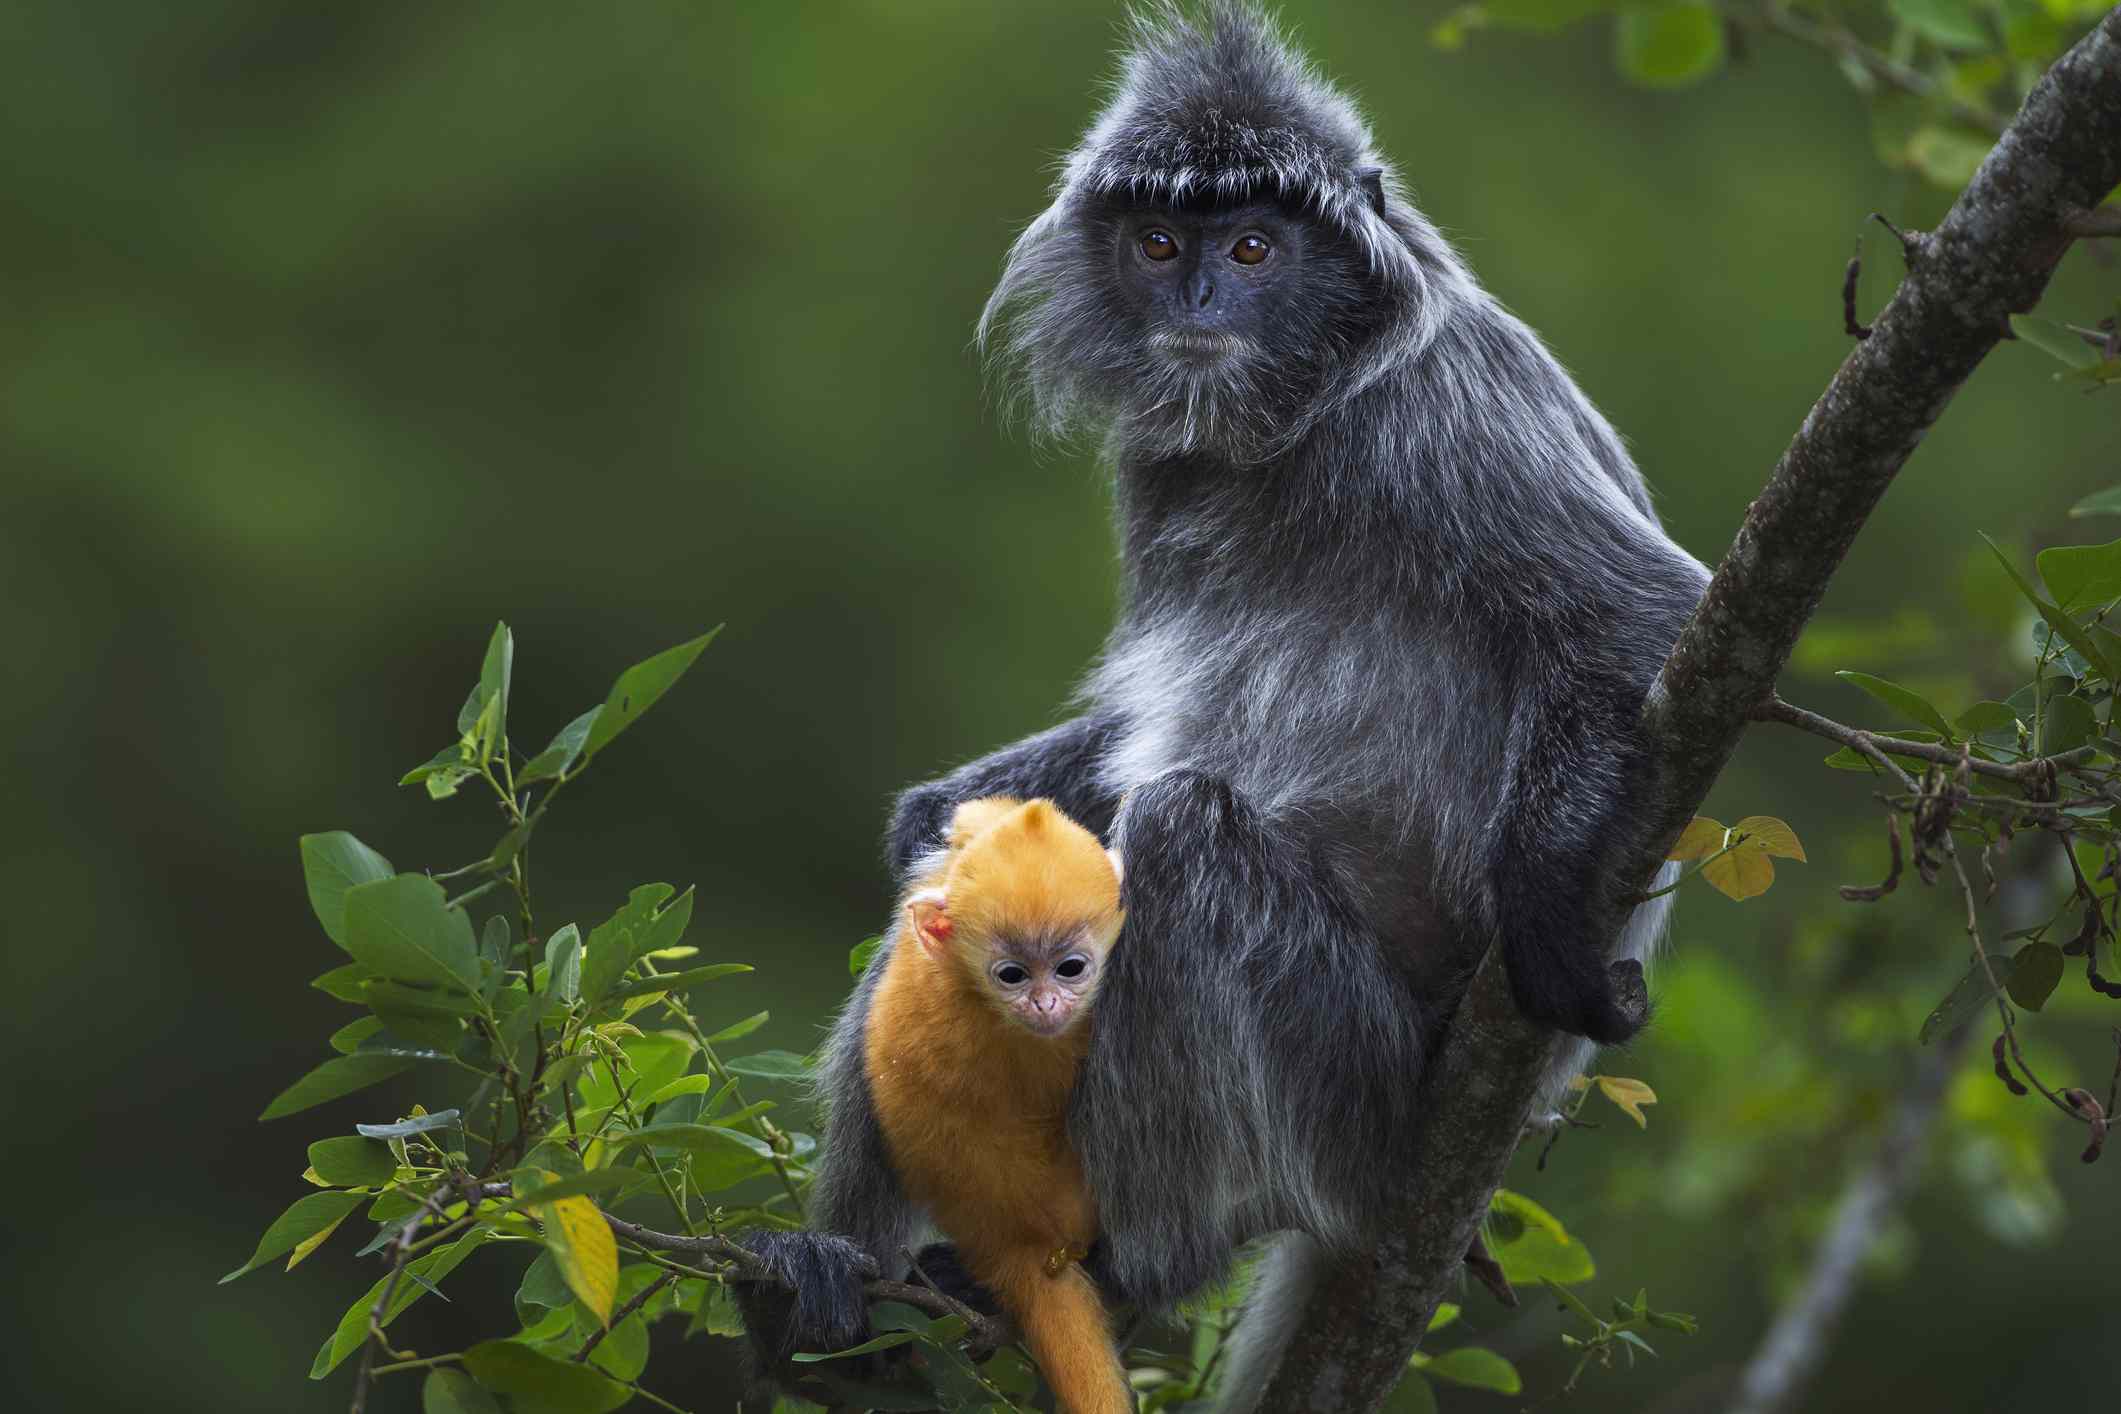 Una hembra de langur de hoja plateada sentada con su bebé de color naranja brillante